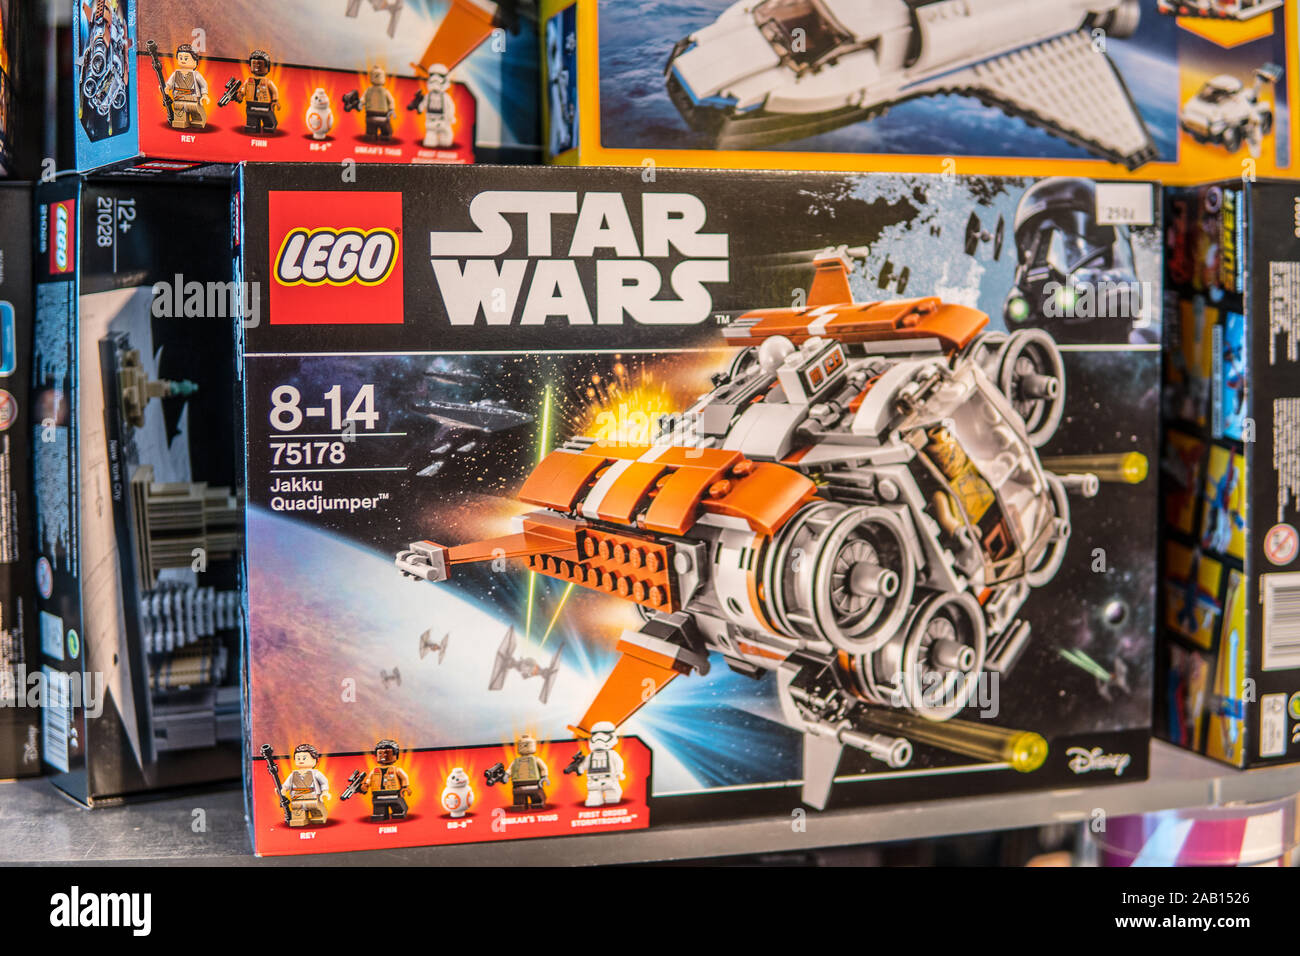 Lego Star Wars Jakku Quadjumper, Disney, pour les enfants âgés de 8-14, 75178, fort sur la boutique pour la vente d'affichage Banque D'Images